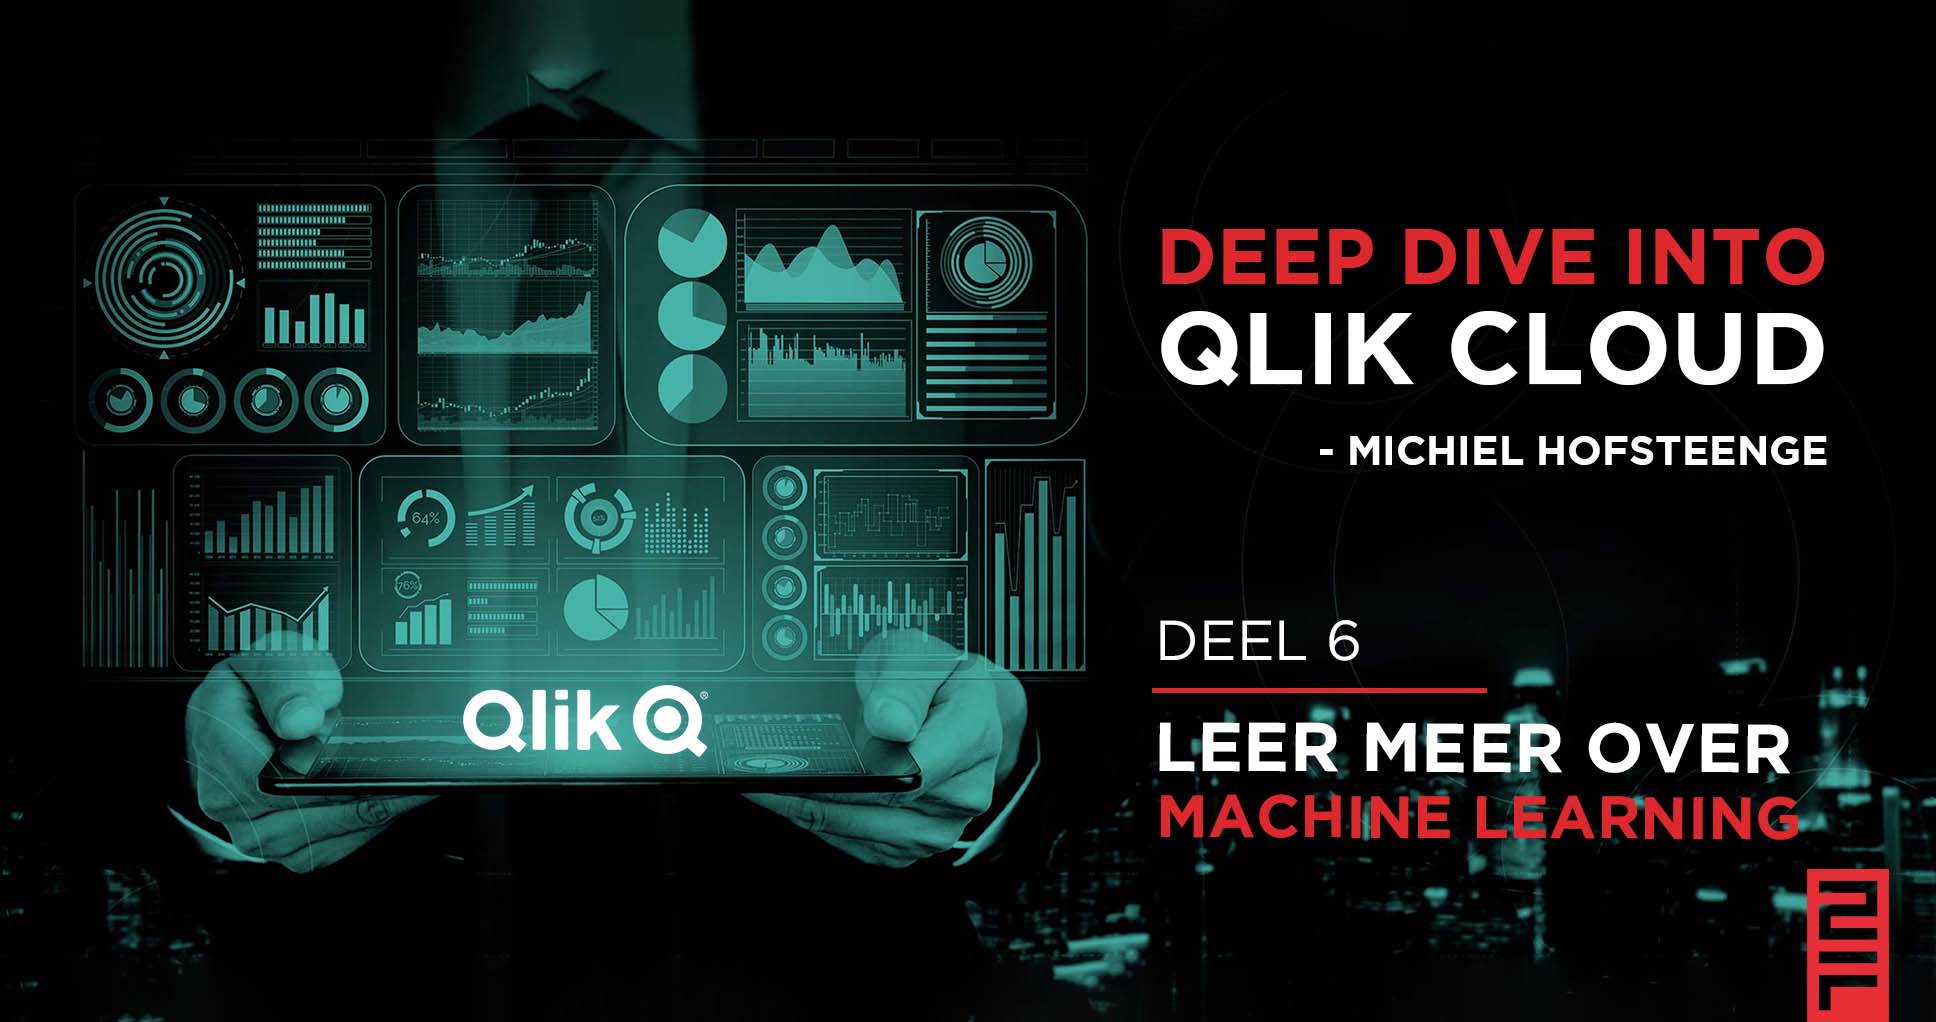 Deep Dive into Qlik en leer meer over machine learning - 2Foqus Data Analytics